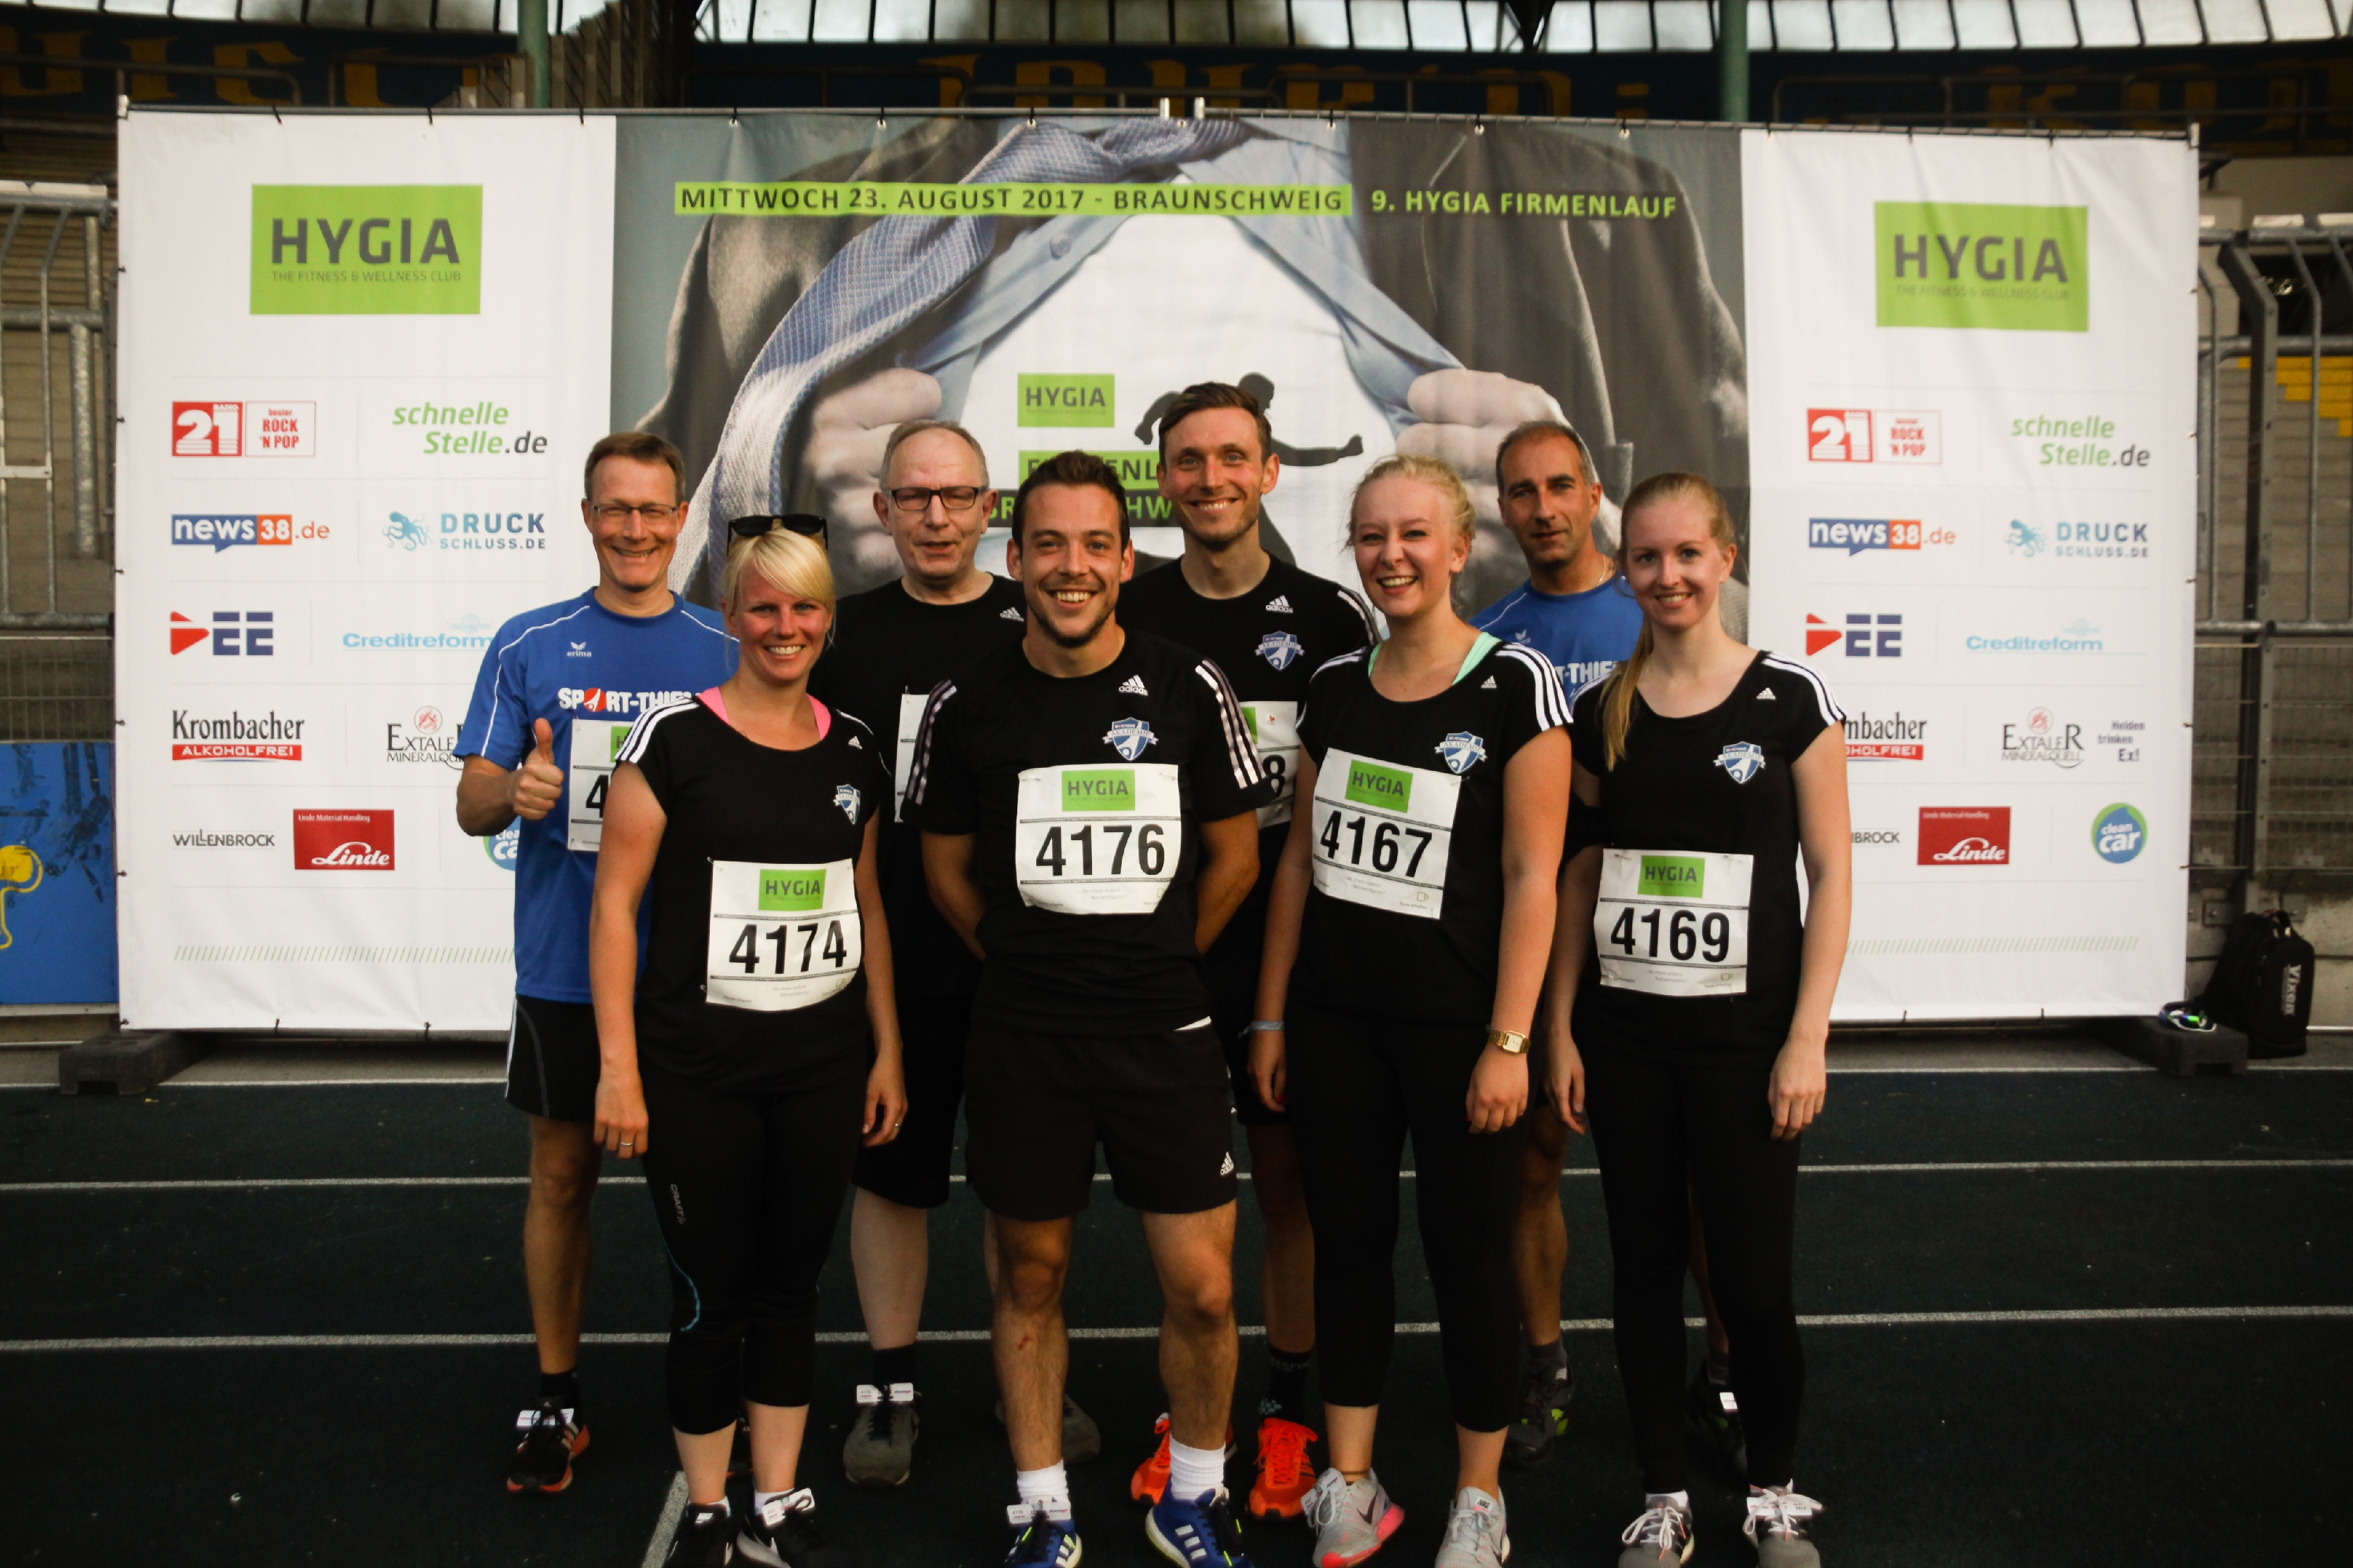 Sportlich unterwegs – Firmenlauf in Braunschweig